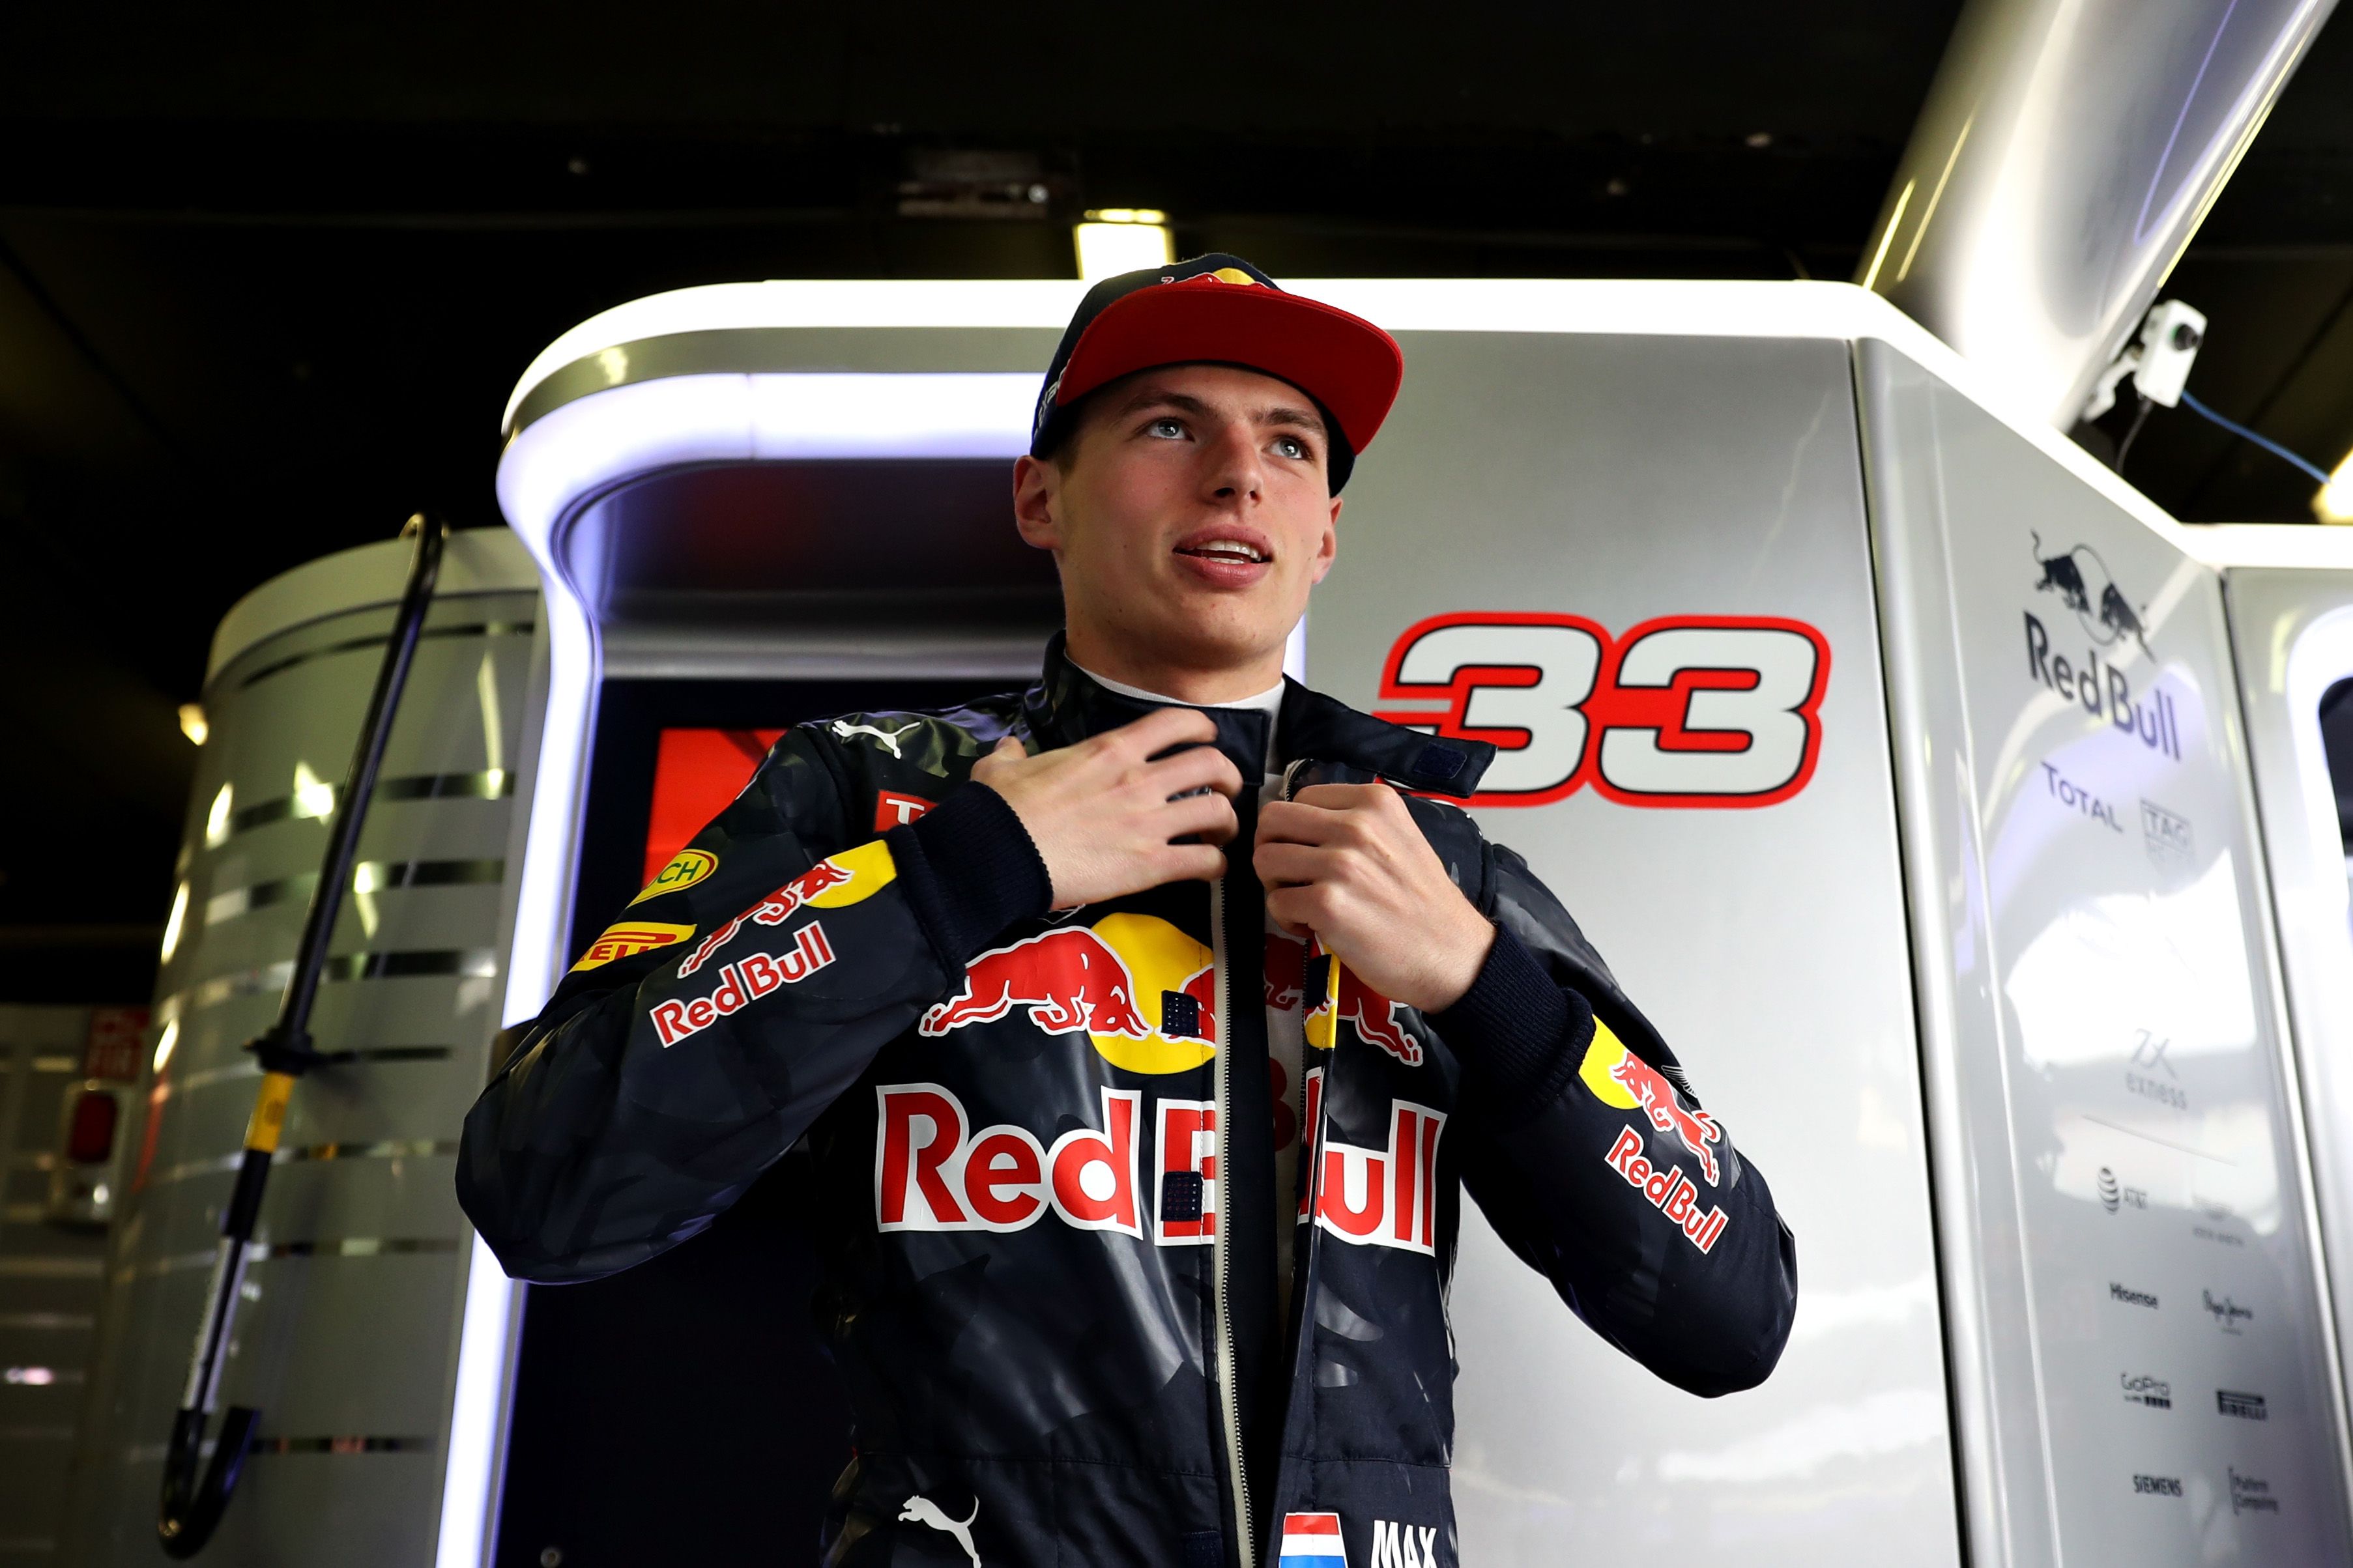 Onderhoud Aanpassing Spectaculair Max Verstappen wins Spanish Grand Prix | CNN